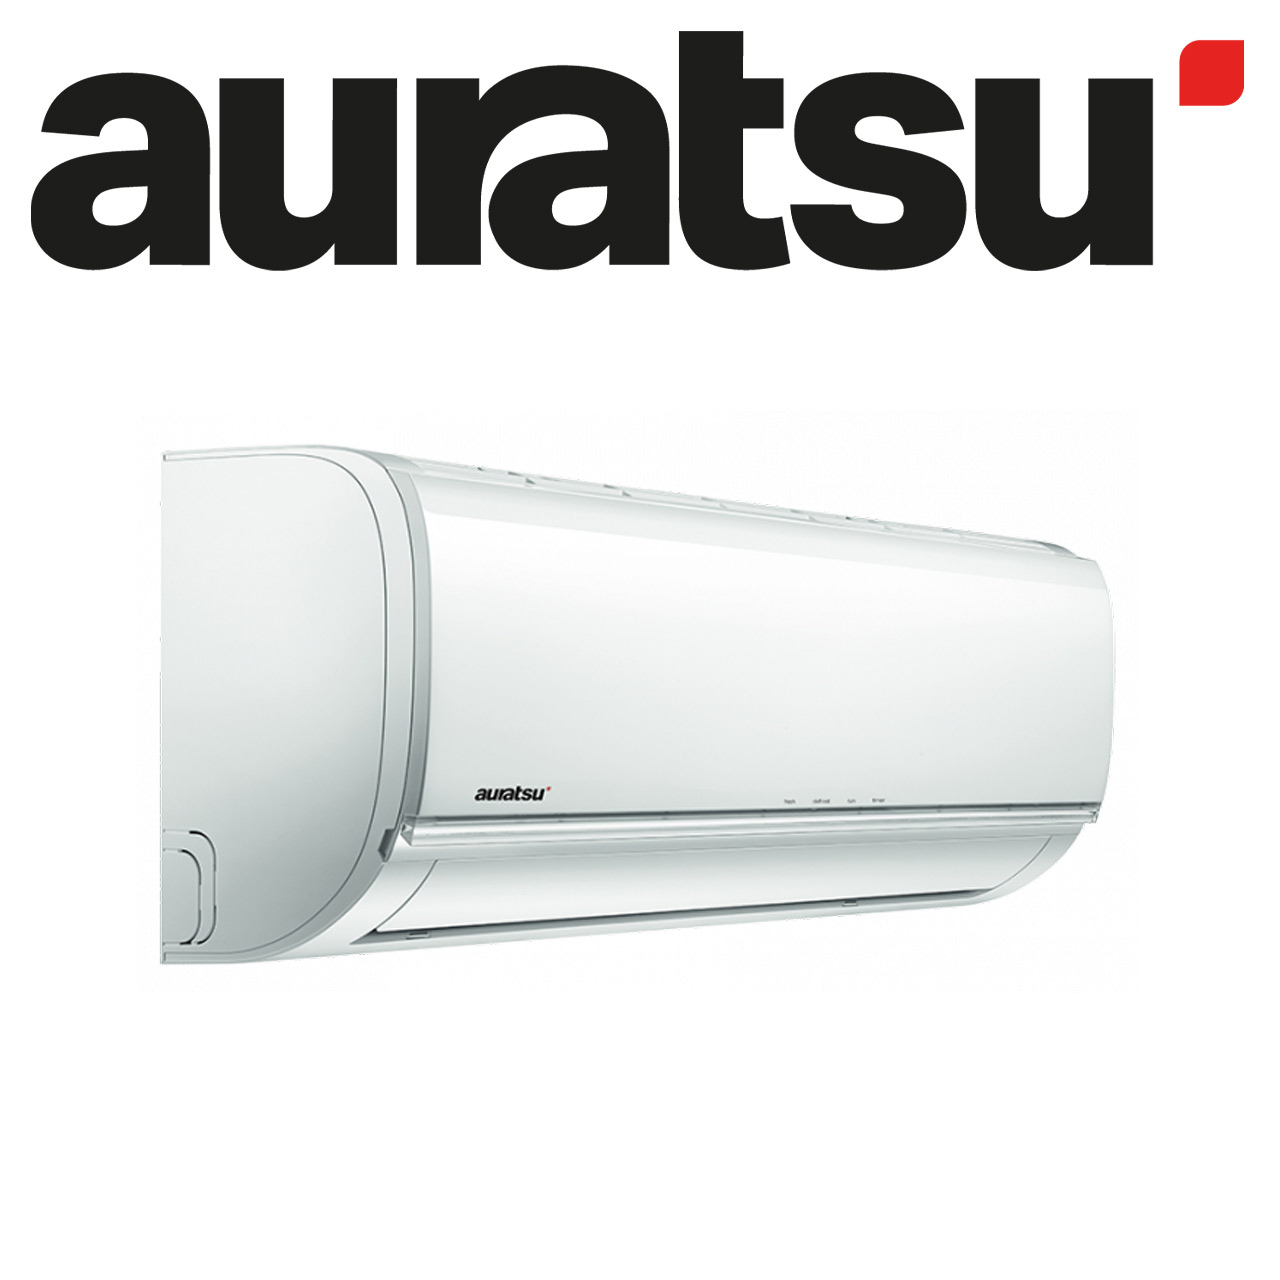 Auratsu Klimaanlage R32 AWX-12KTAI 3,5 kW I BTU 12000 Quick Connect 3 Meter